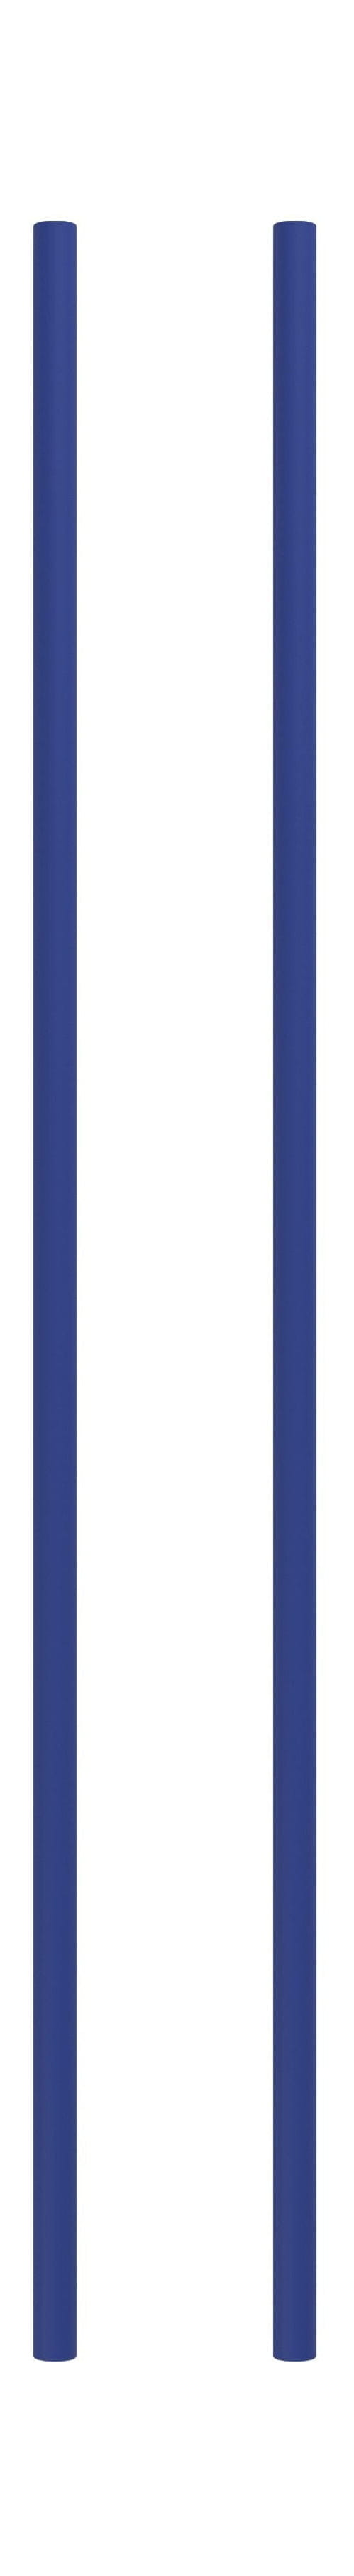 Moebe Regalsystem/Wandregalbein 85 cm tiefblau, 2 Set von 2